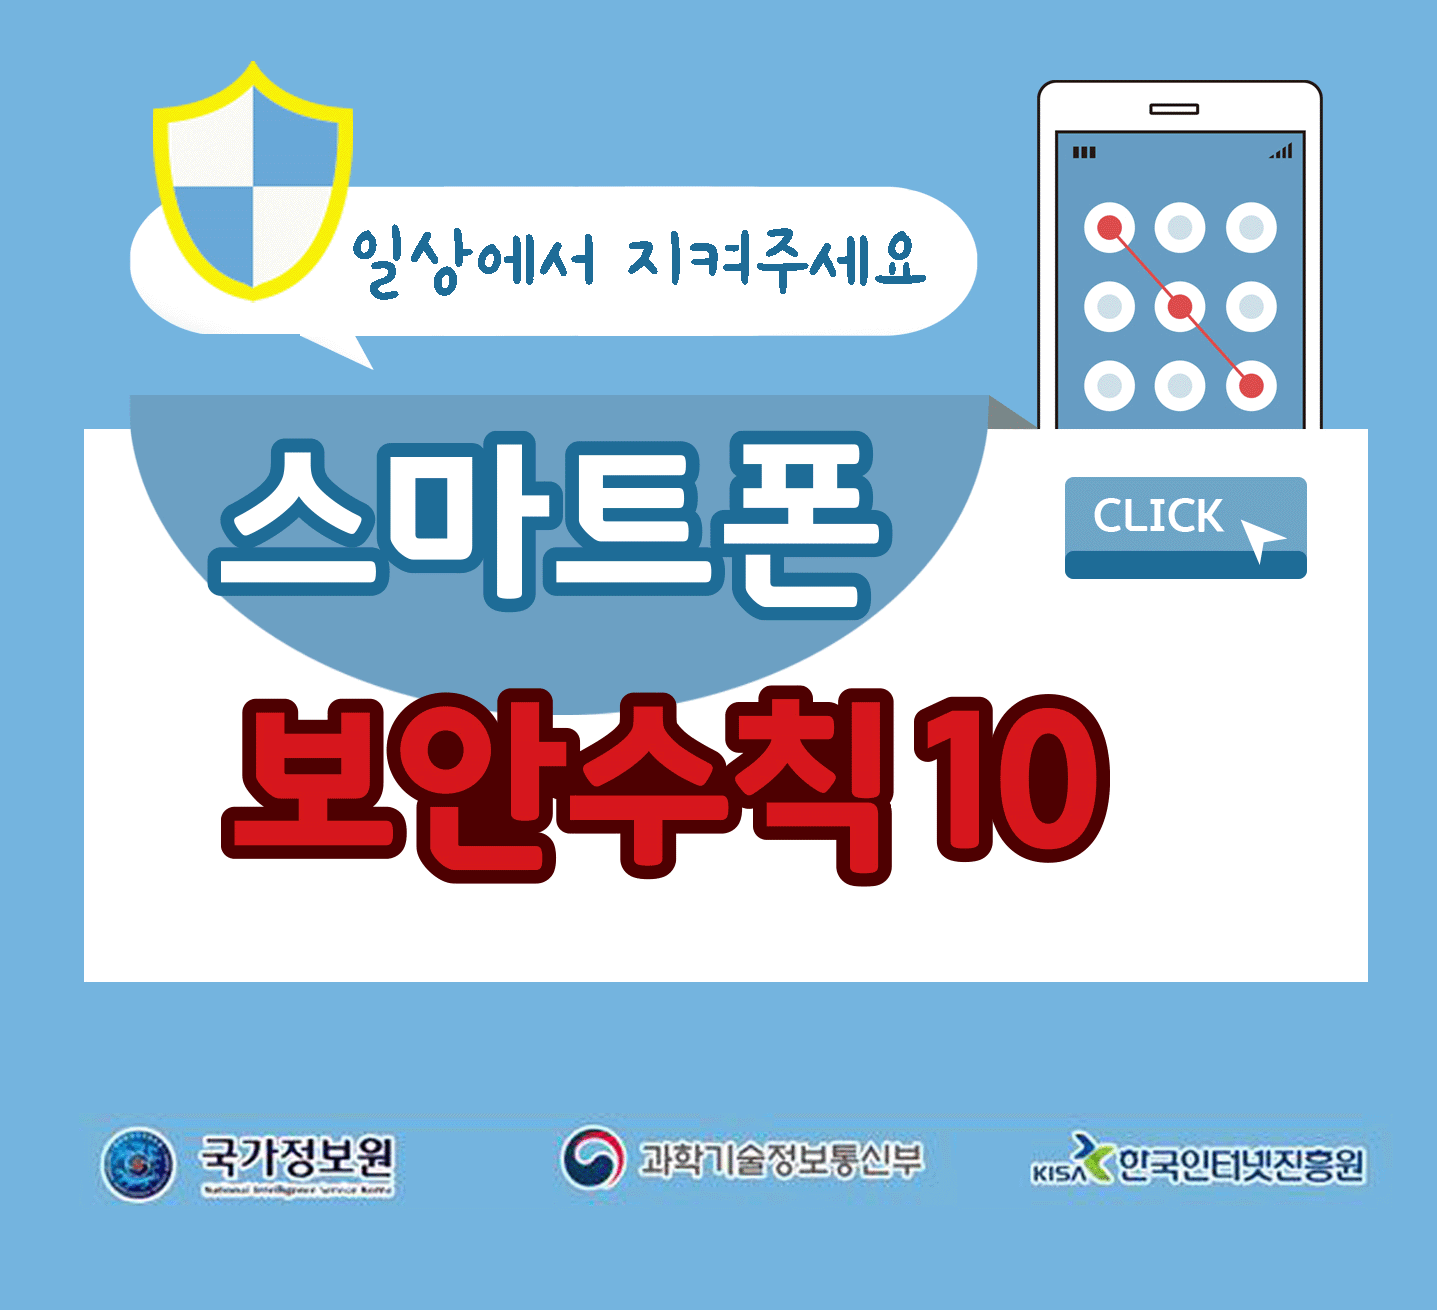 일상에서 지켜주세요
스마트폰 보안수칙 10 CLICK
국가정보원, 과학기술정보통신부, 한국인터넷진흥원;jsessionid=BC191B56D48227281C506E1B482D2568